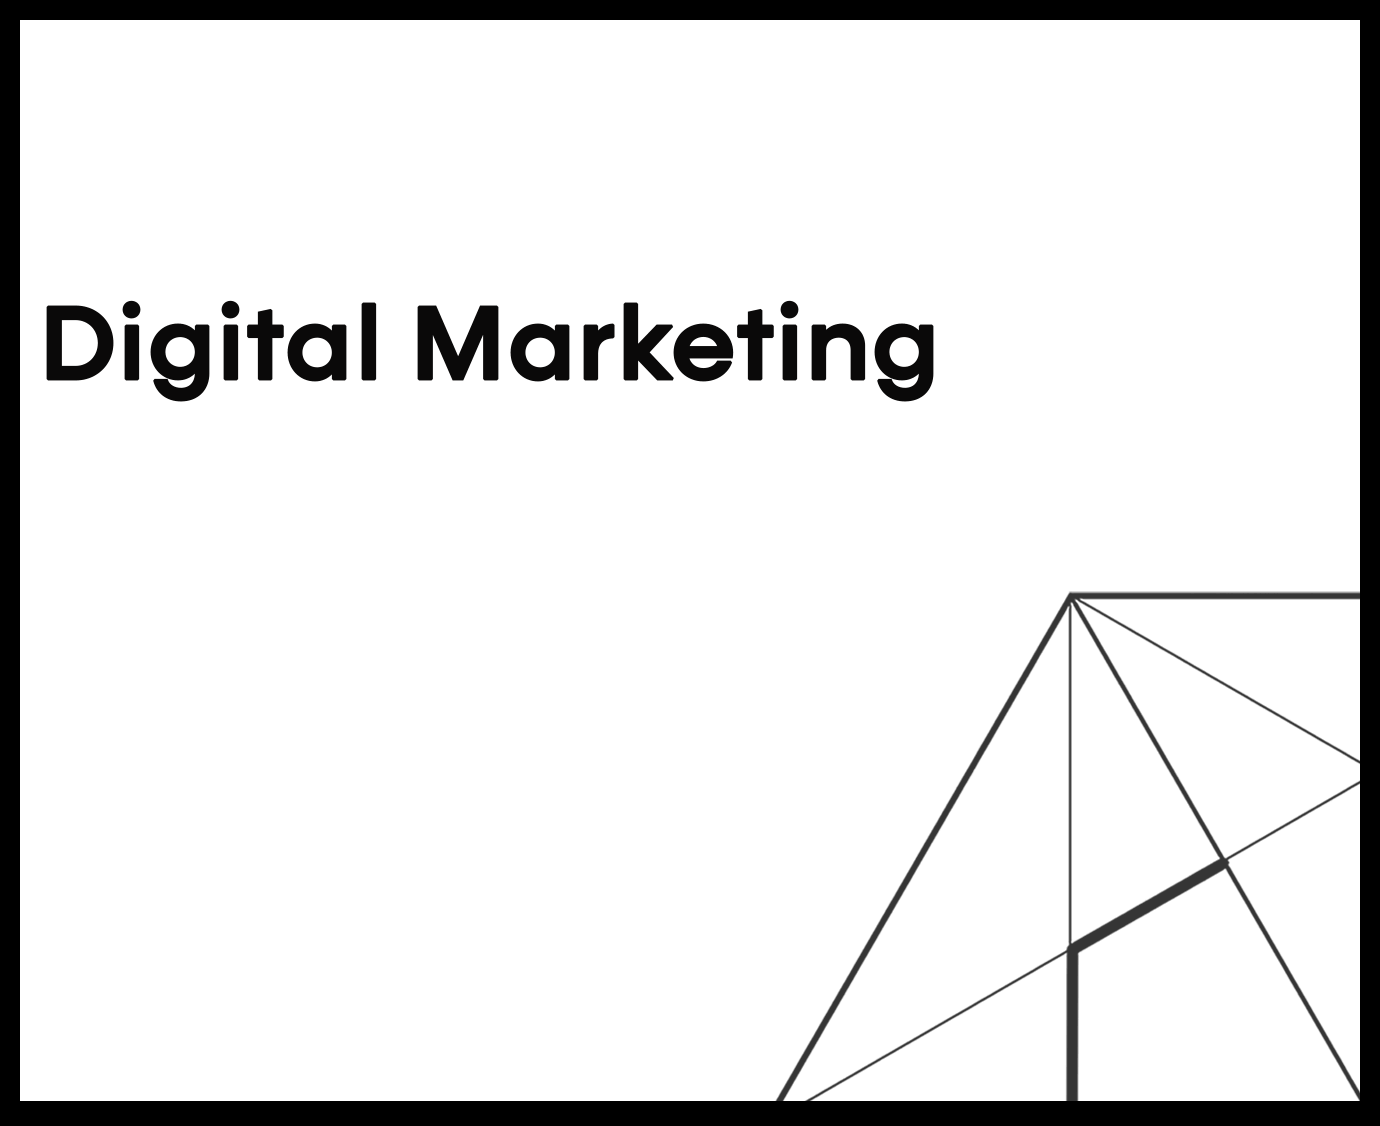 Digital Marketing Corellage agency